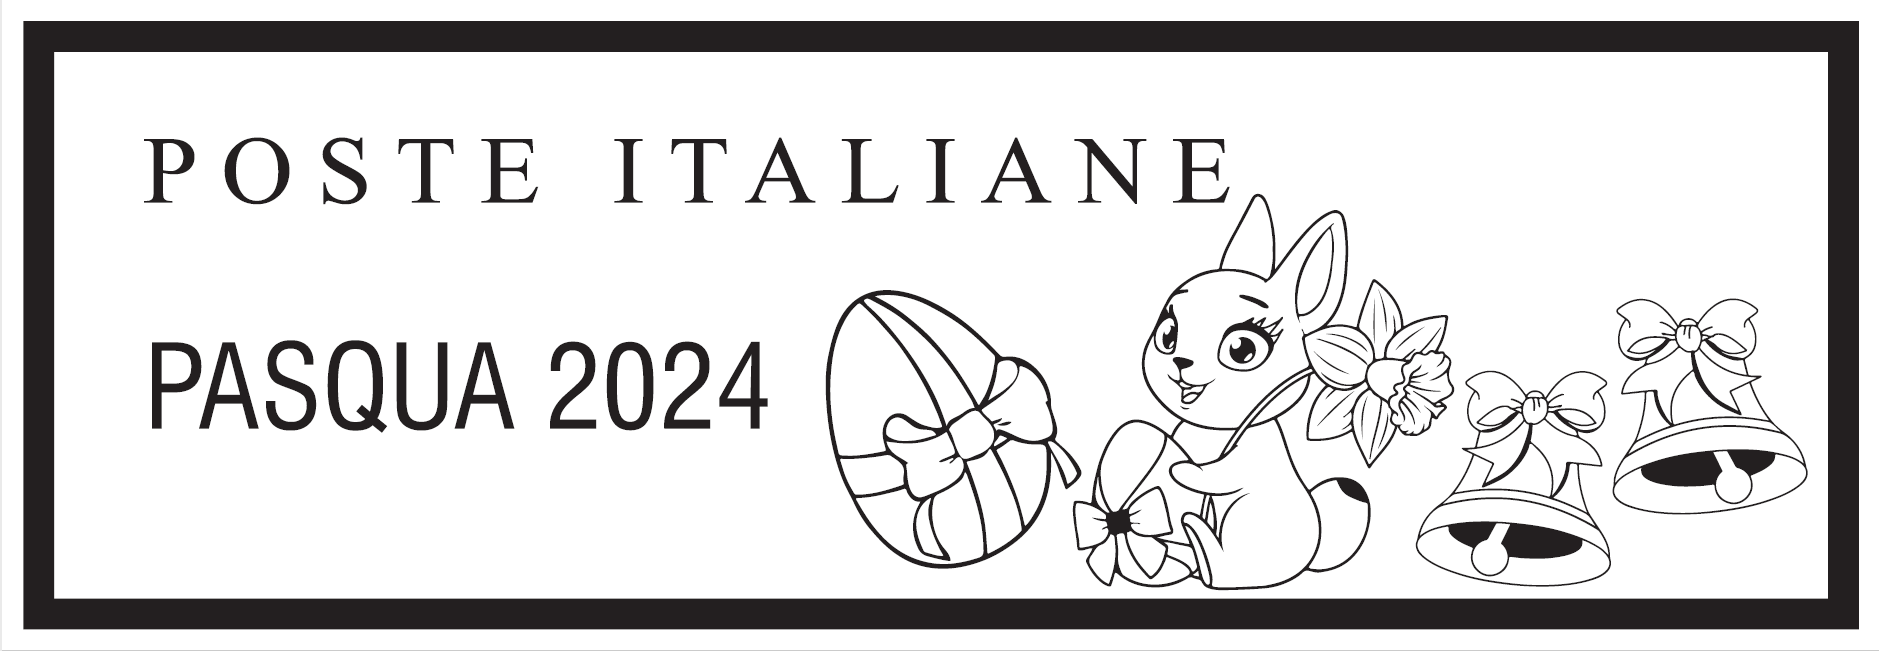 Anche ad Alghero Poste Italiane celebra la Pasqua 2024 - Alghero News